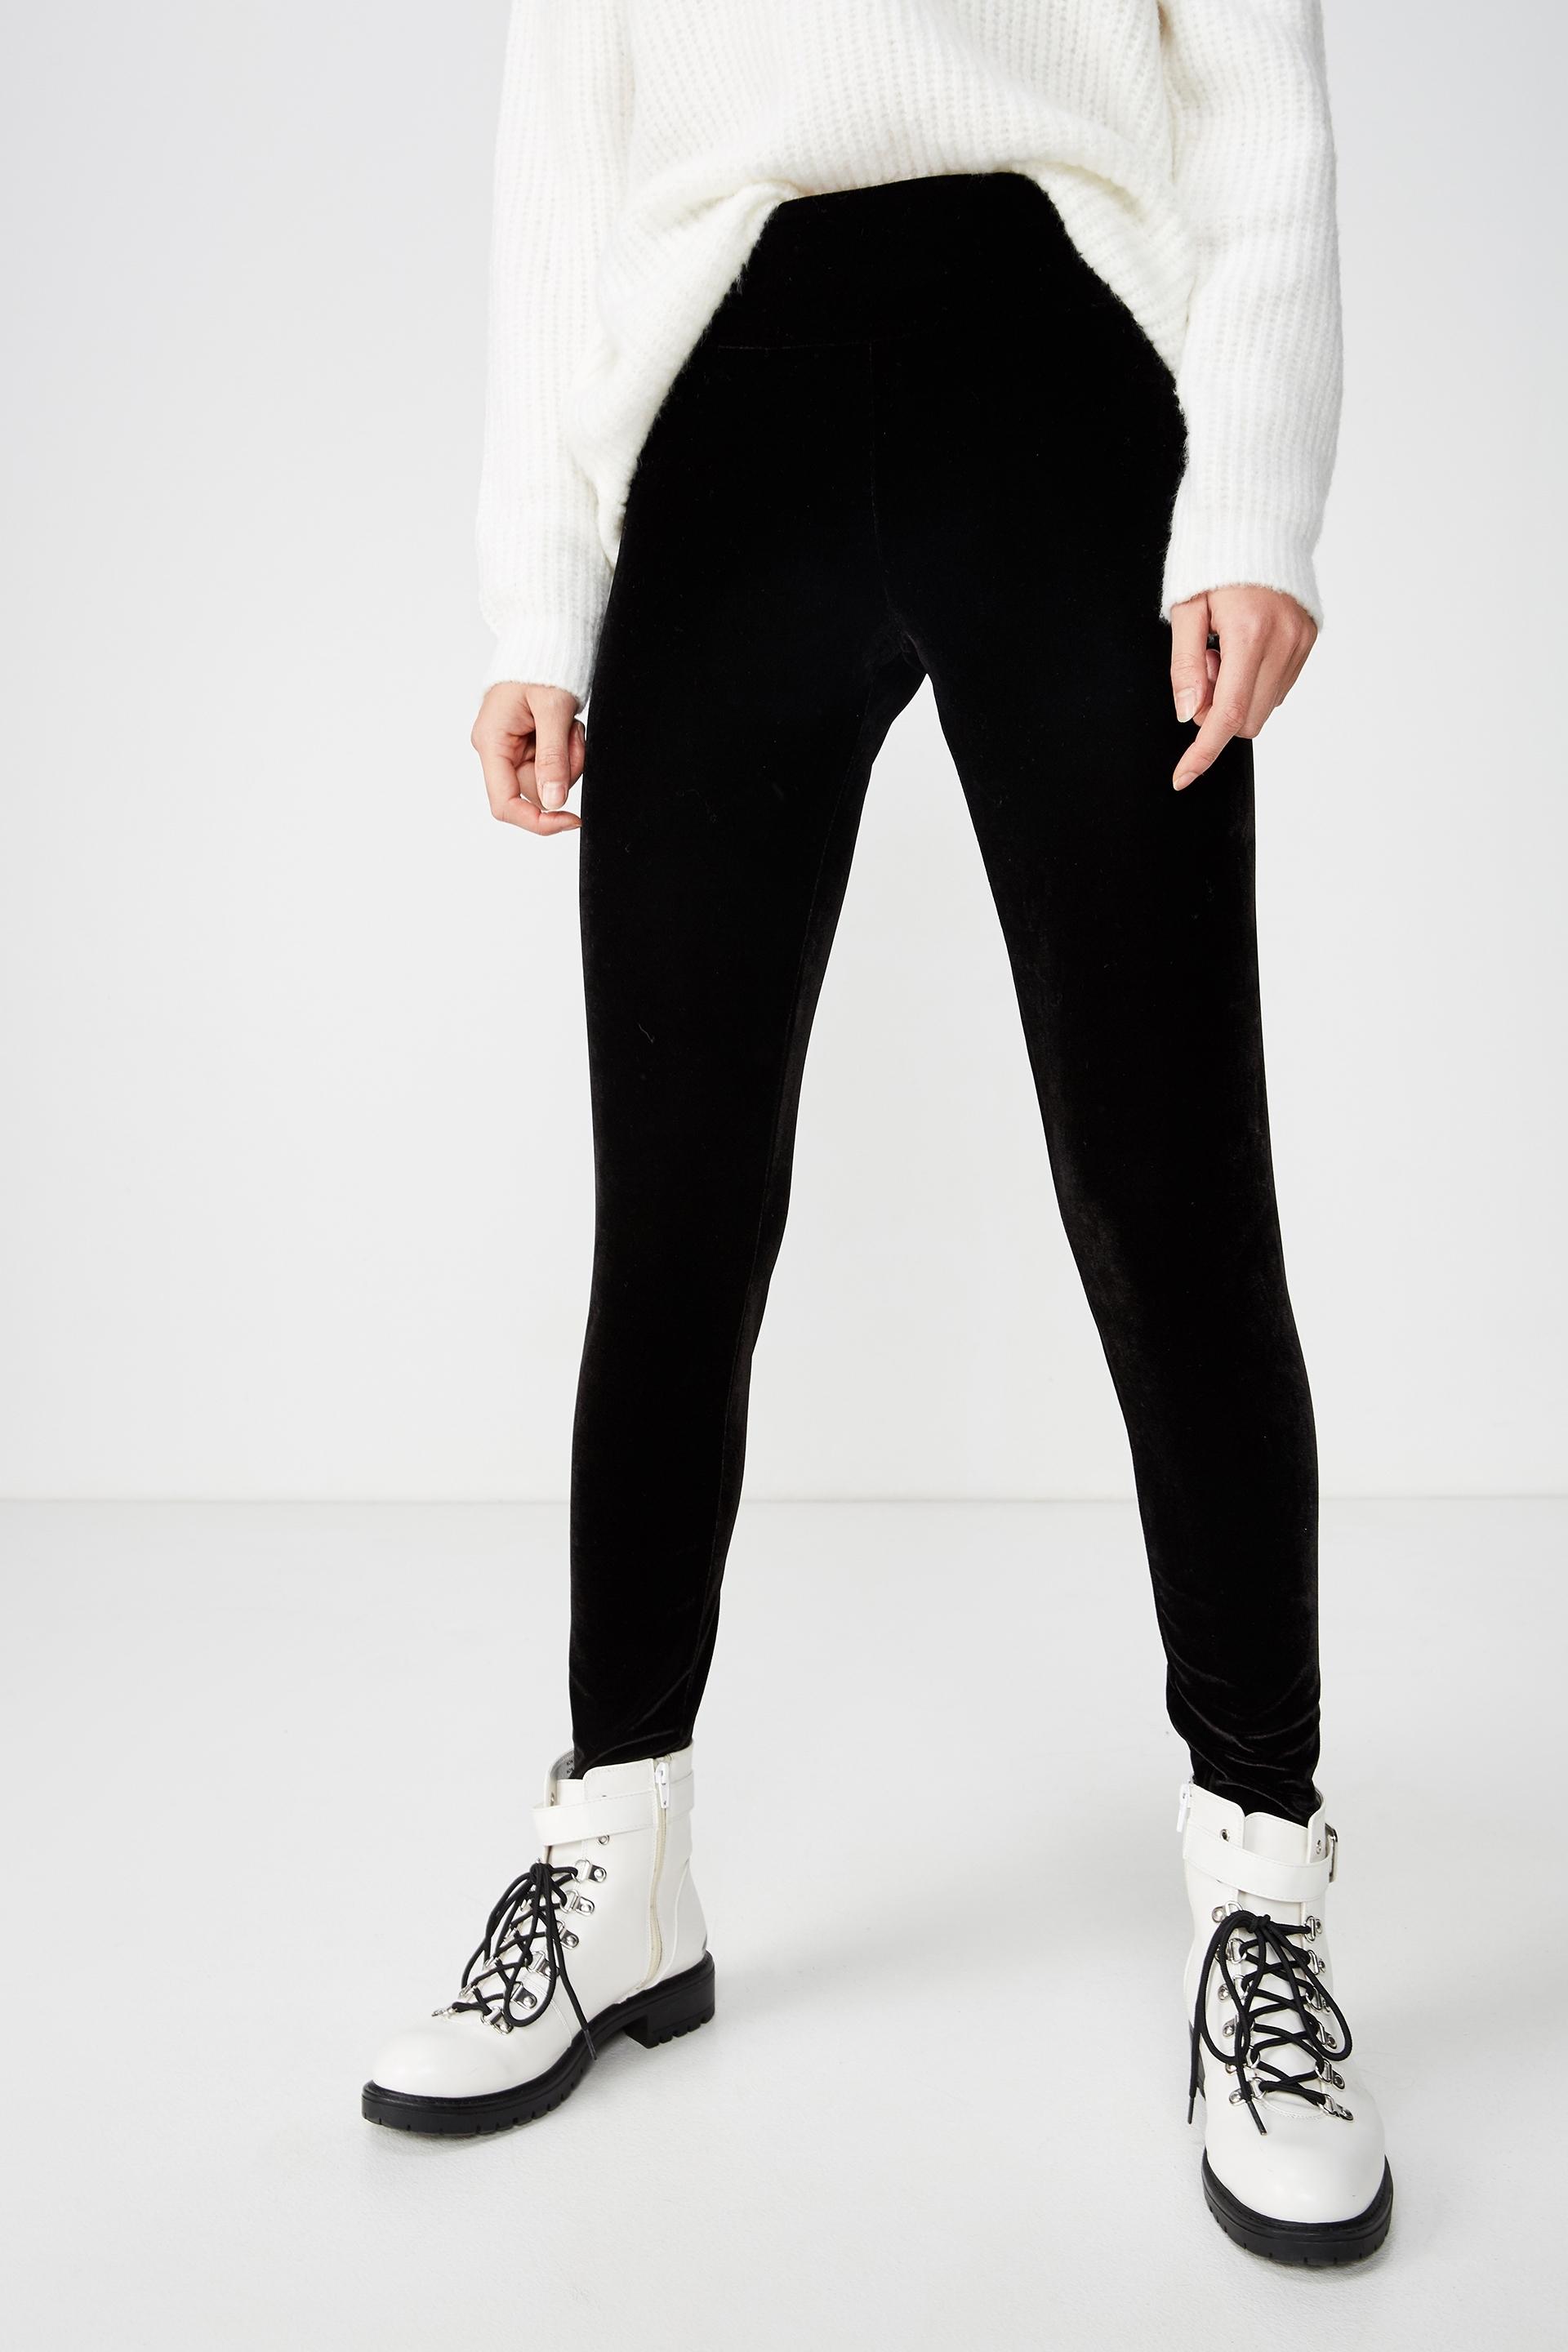 Dakota detail leggings - black velvet Cotton On Trousers | Superbalist.com